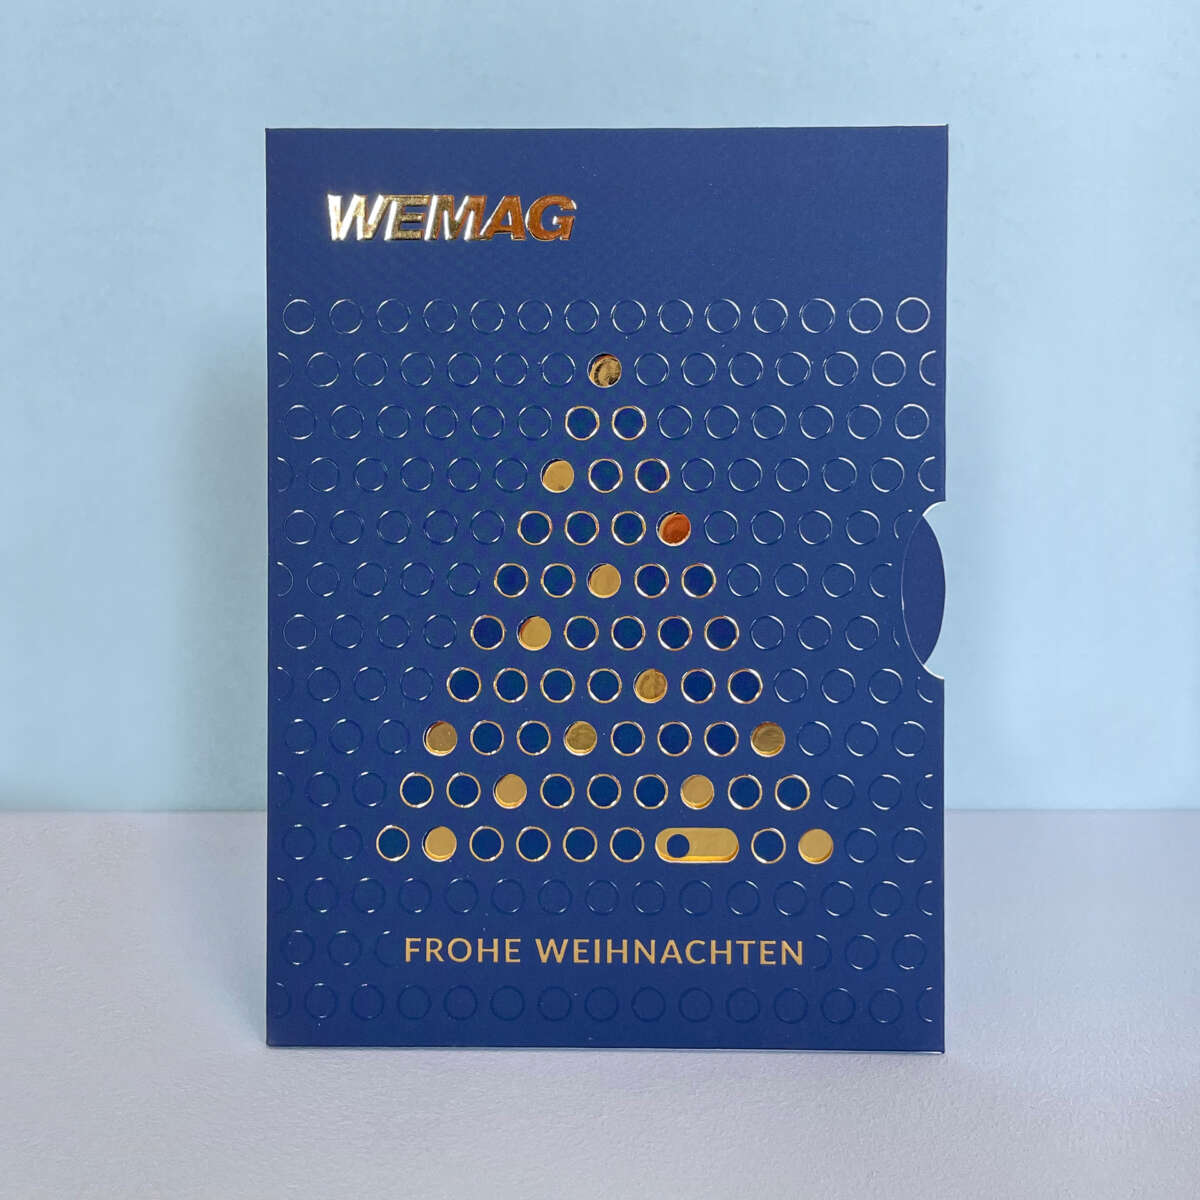 Titel der WEMAG Weihnachtskarte mit Weihnachtsbaum mit On/Off-Funktion